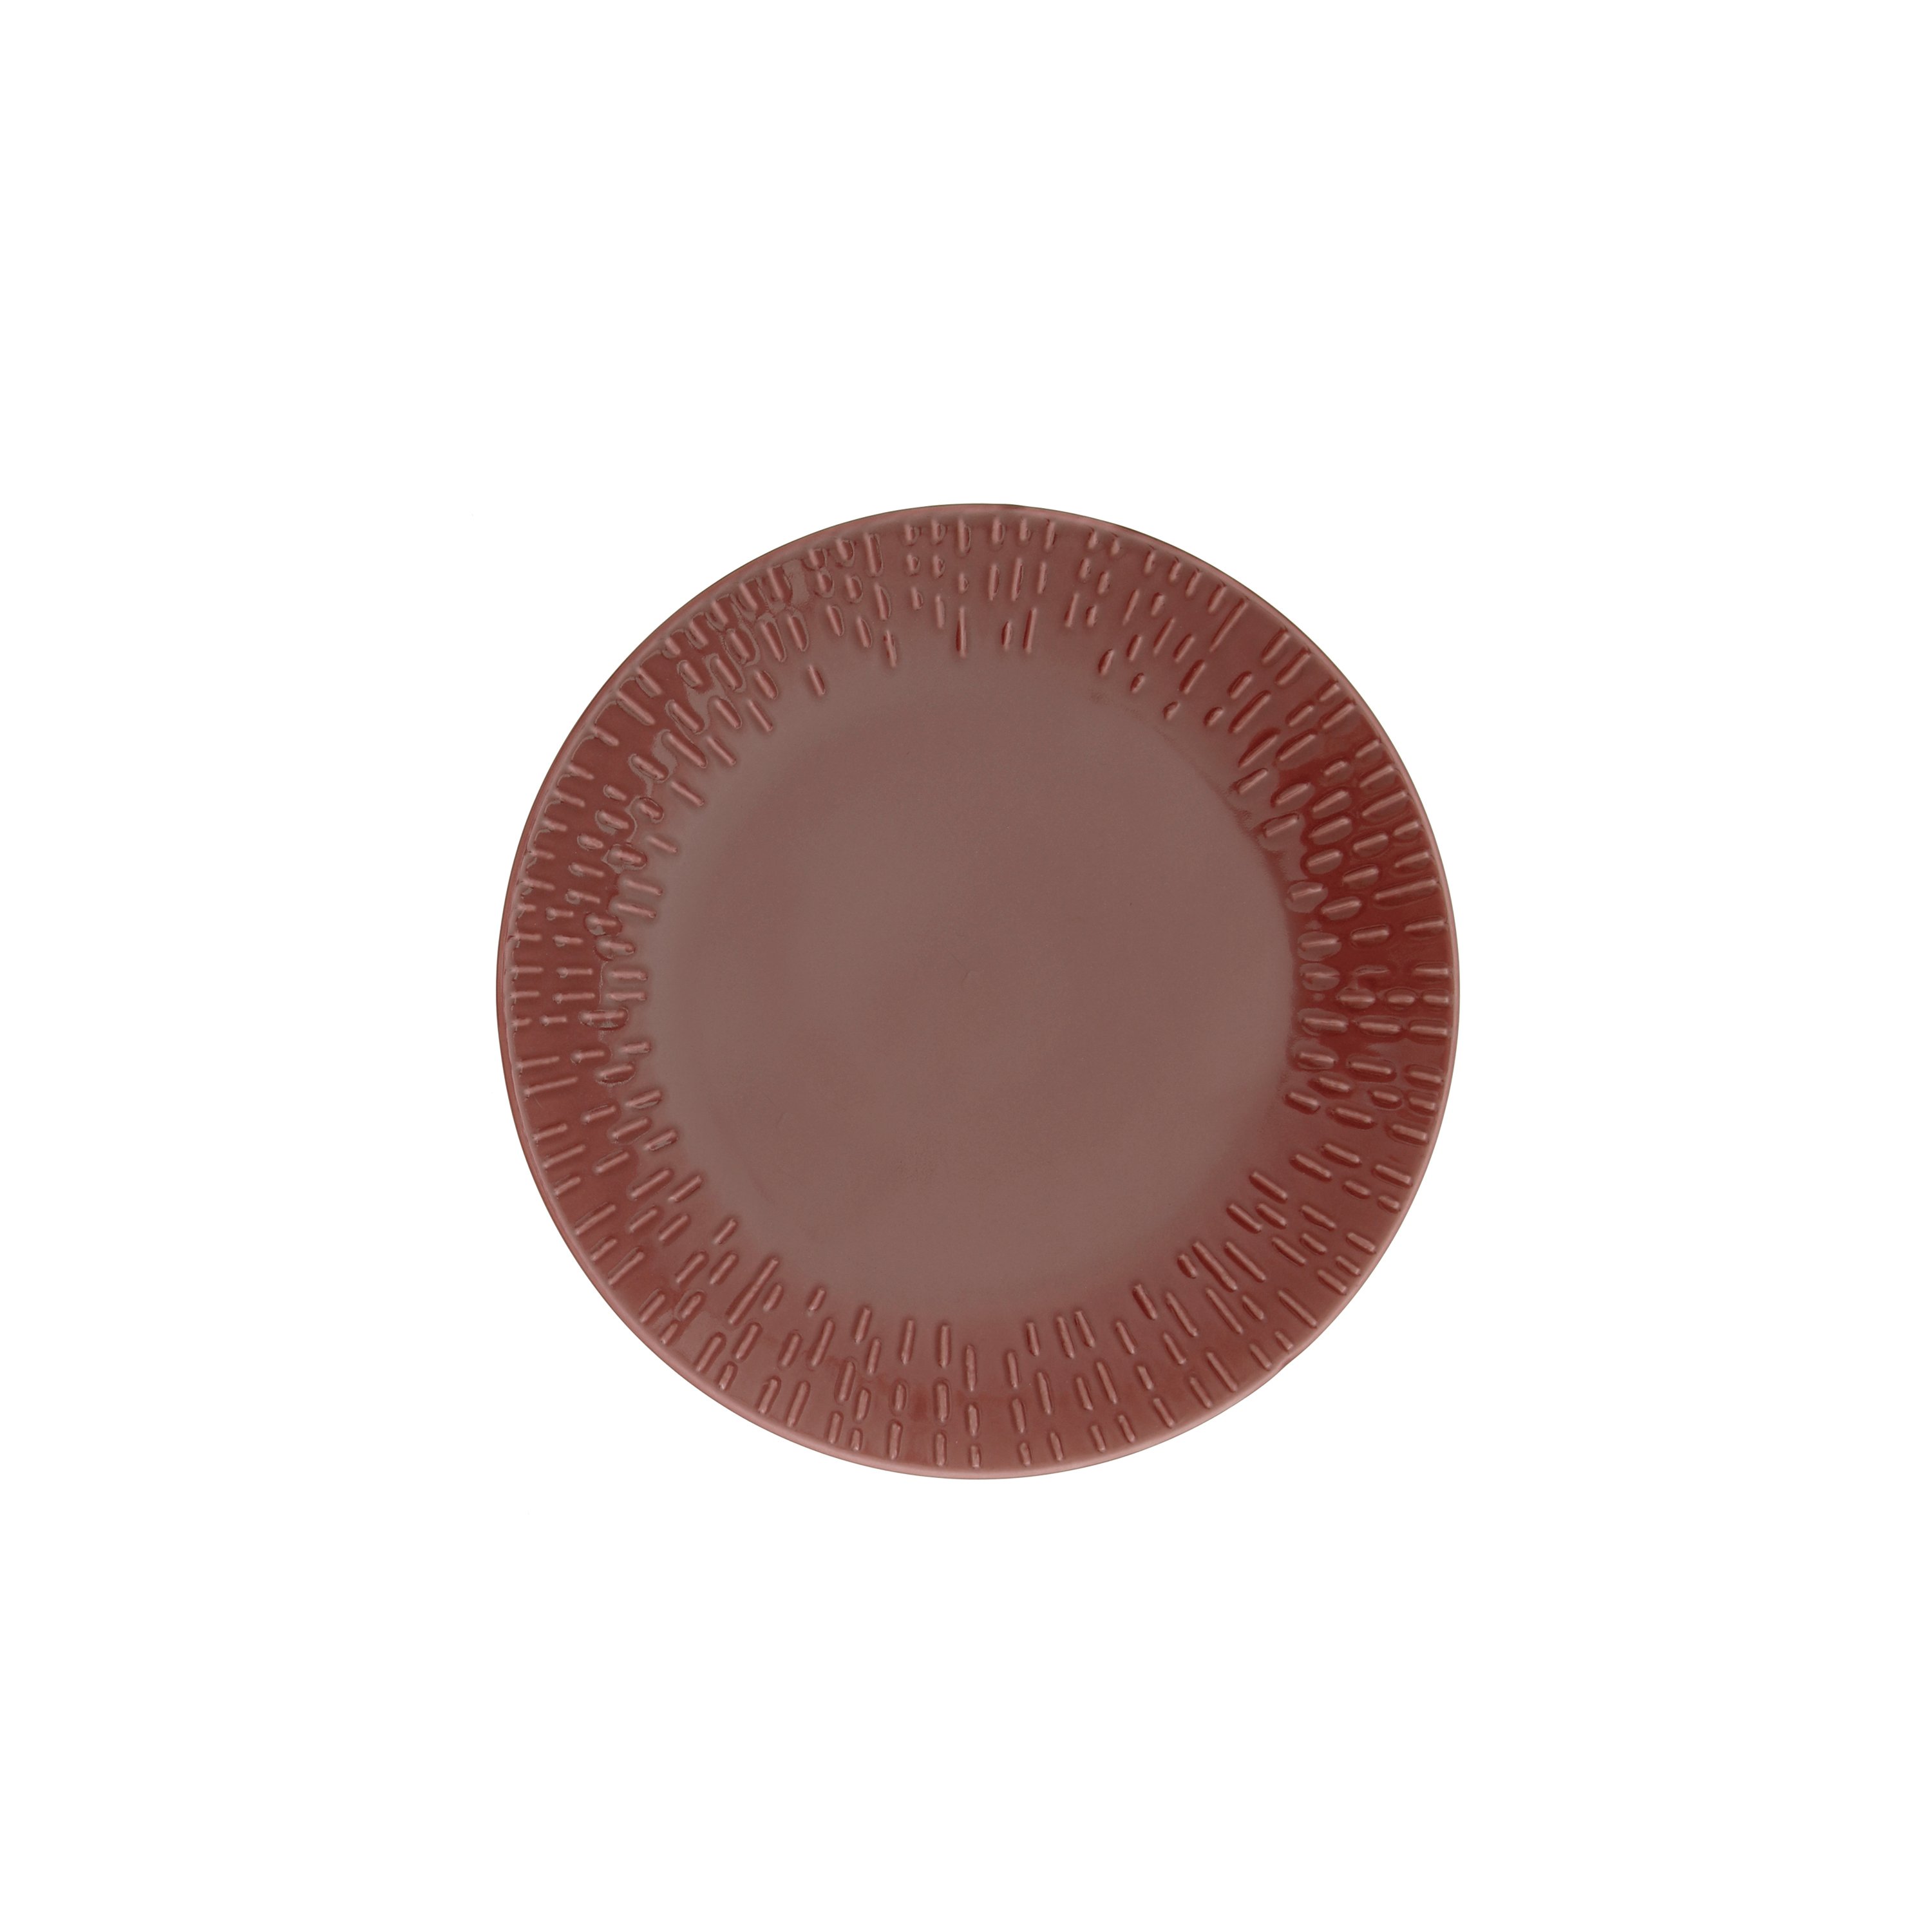 Aida - Life in Colour - Confetti - Bordeaux dessert plate w/relief porcelain (13362)